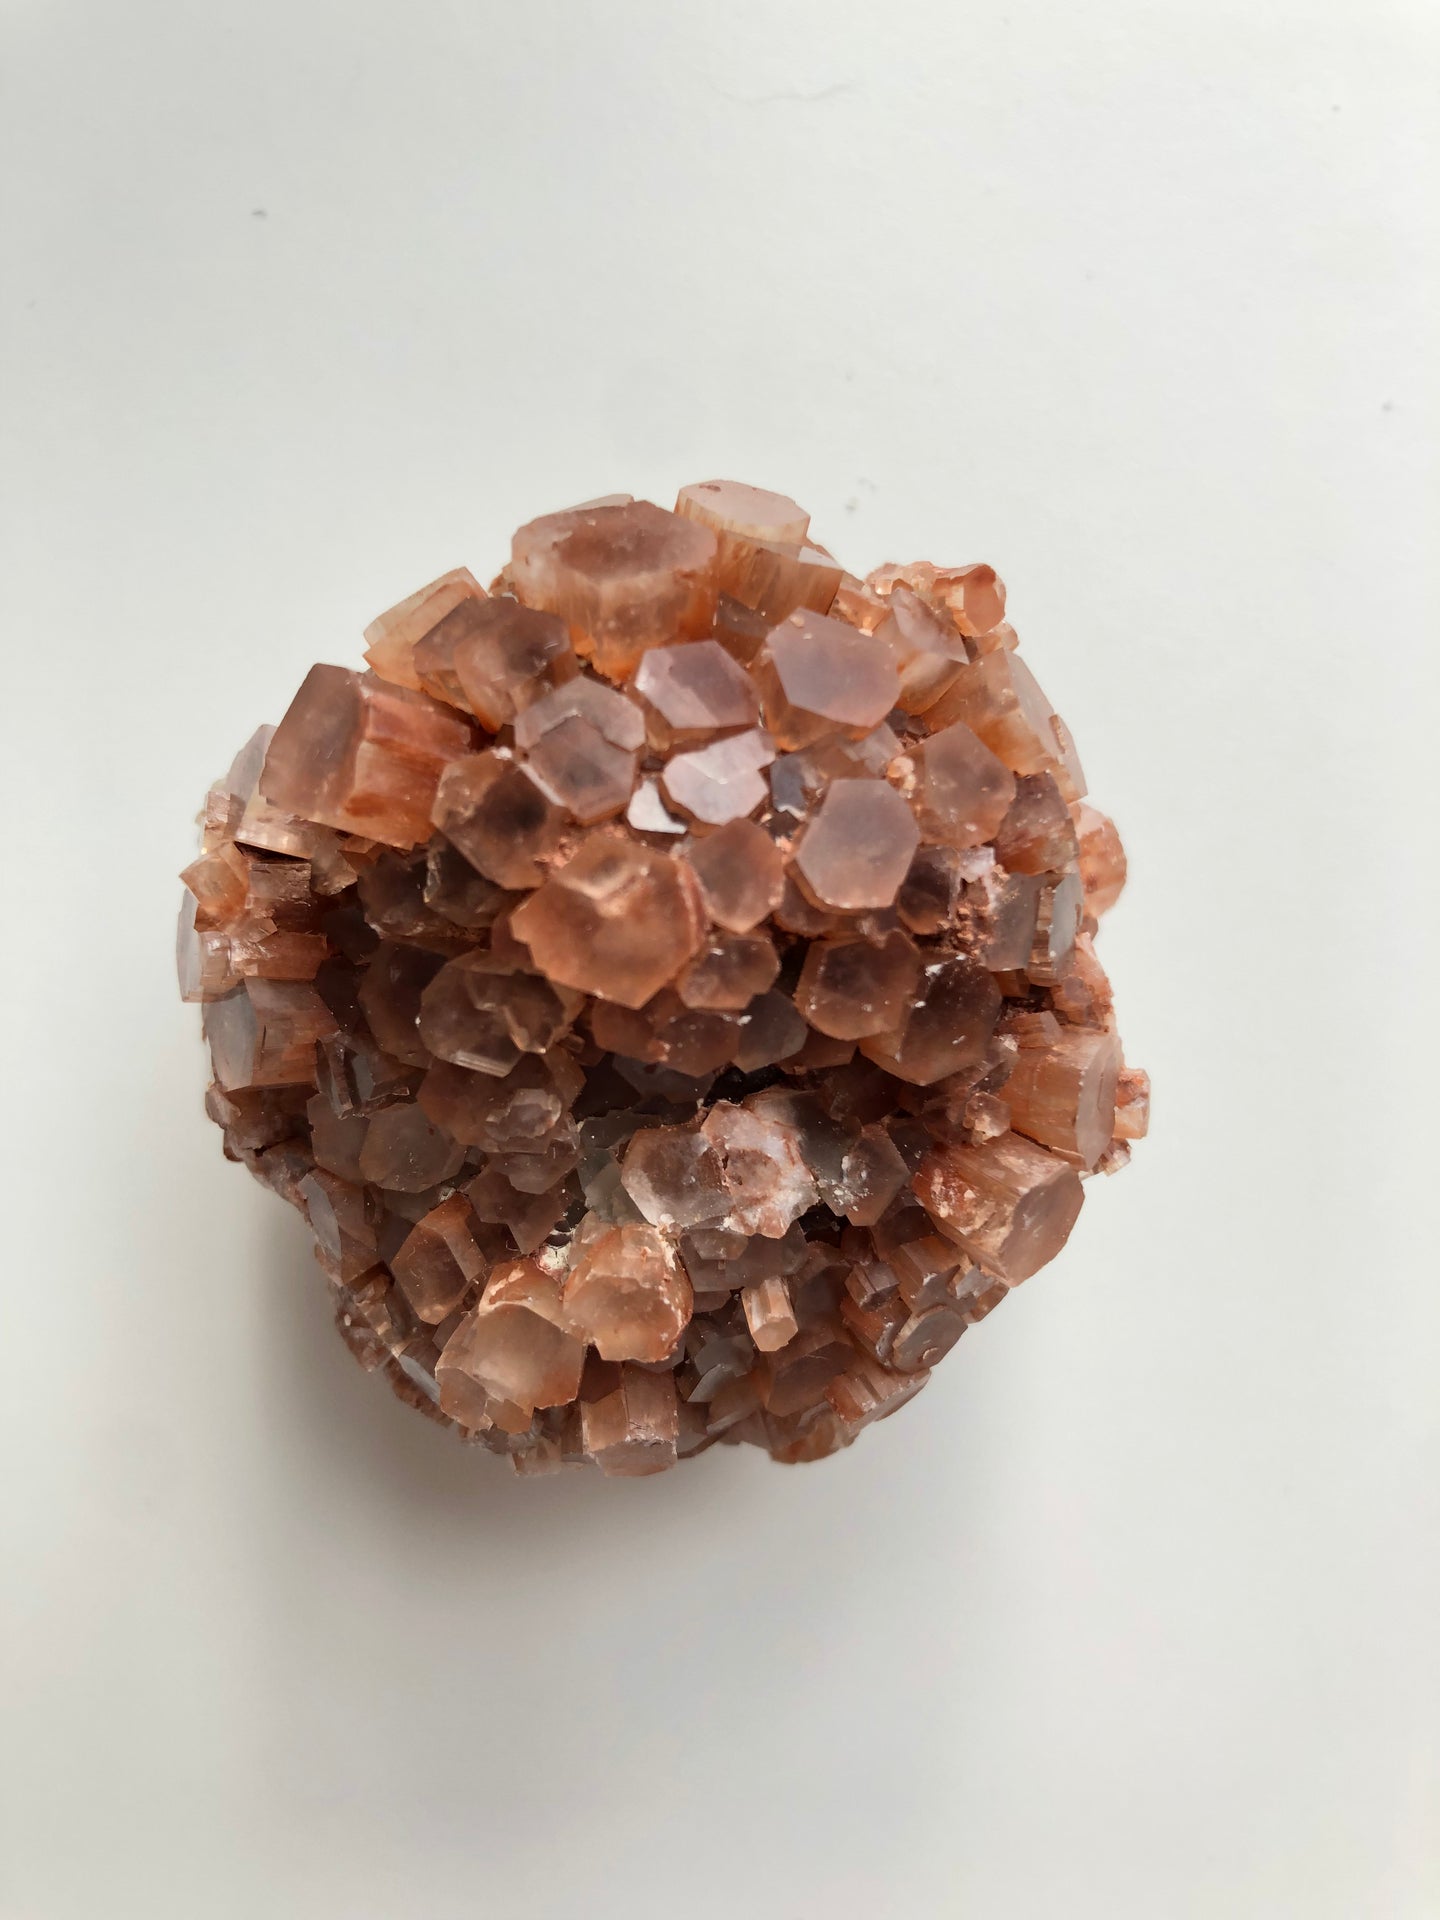 aragonite cluster small (5-6cm)